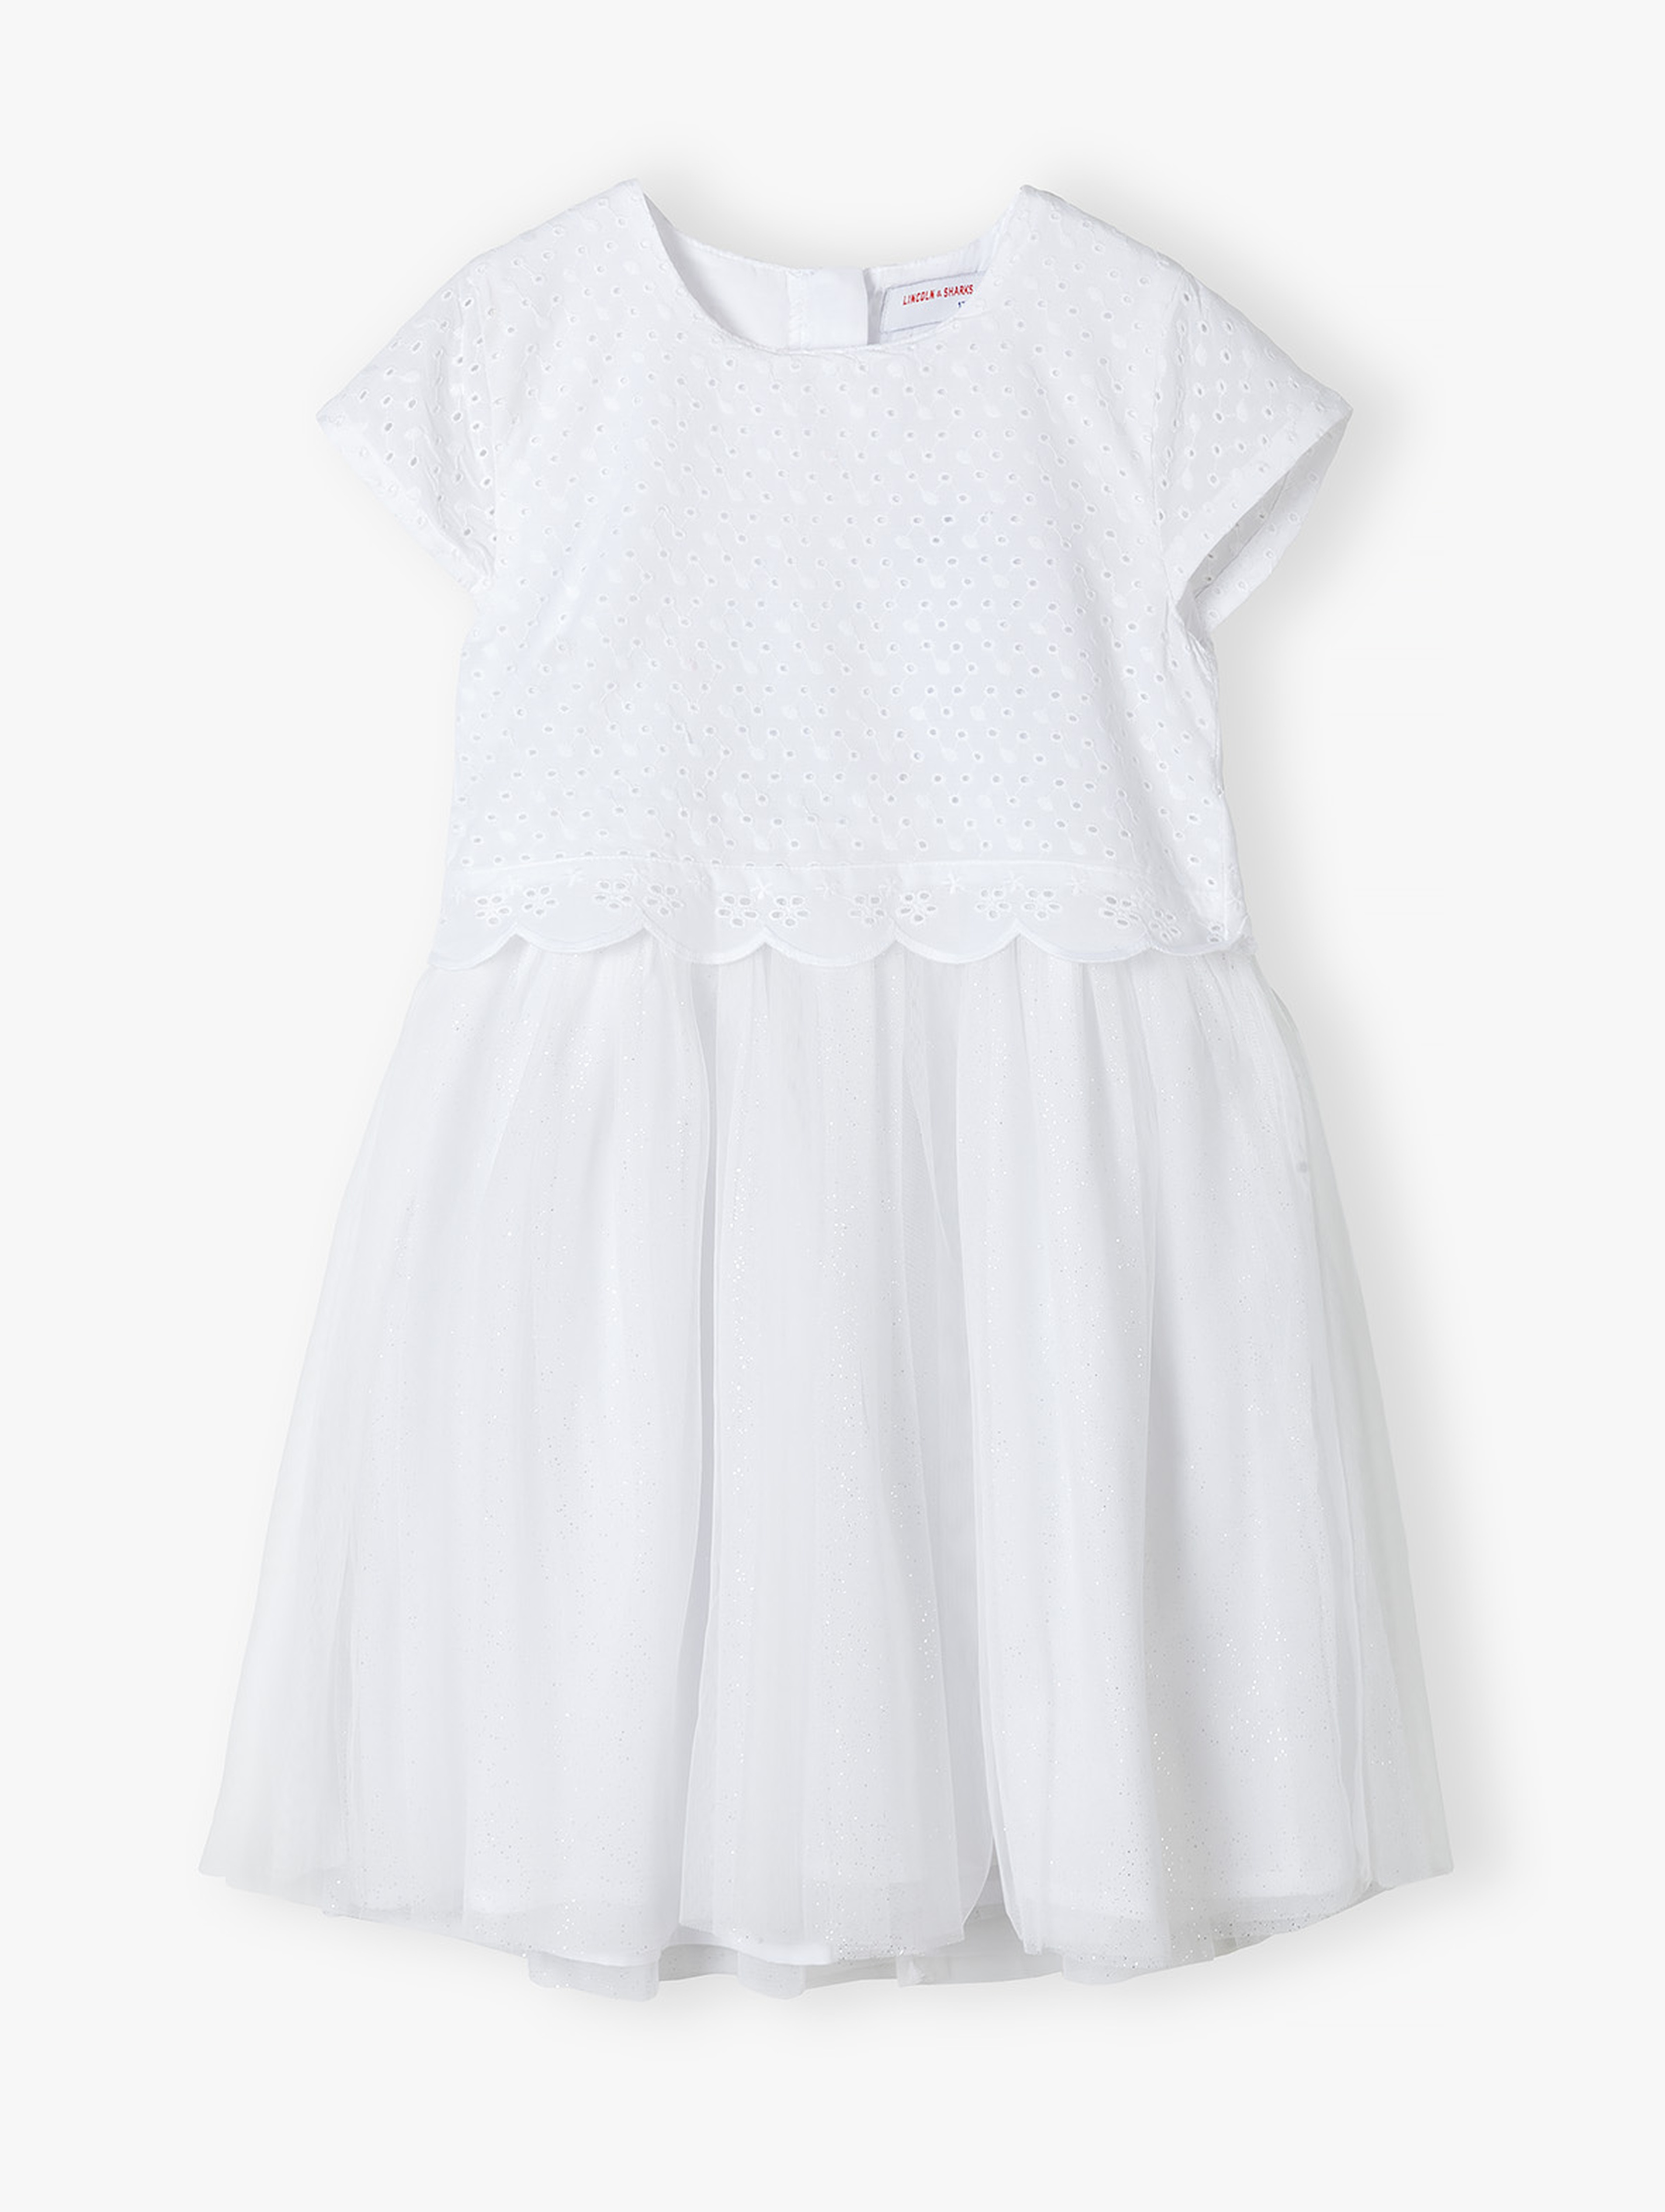 Biała sukienka dla dziewczynki z krótkim rękawem